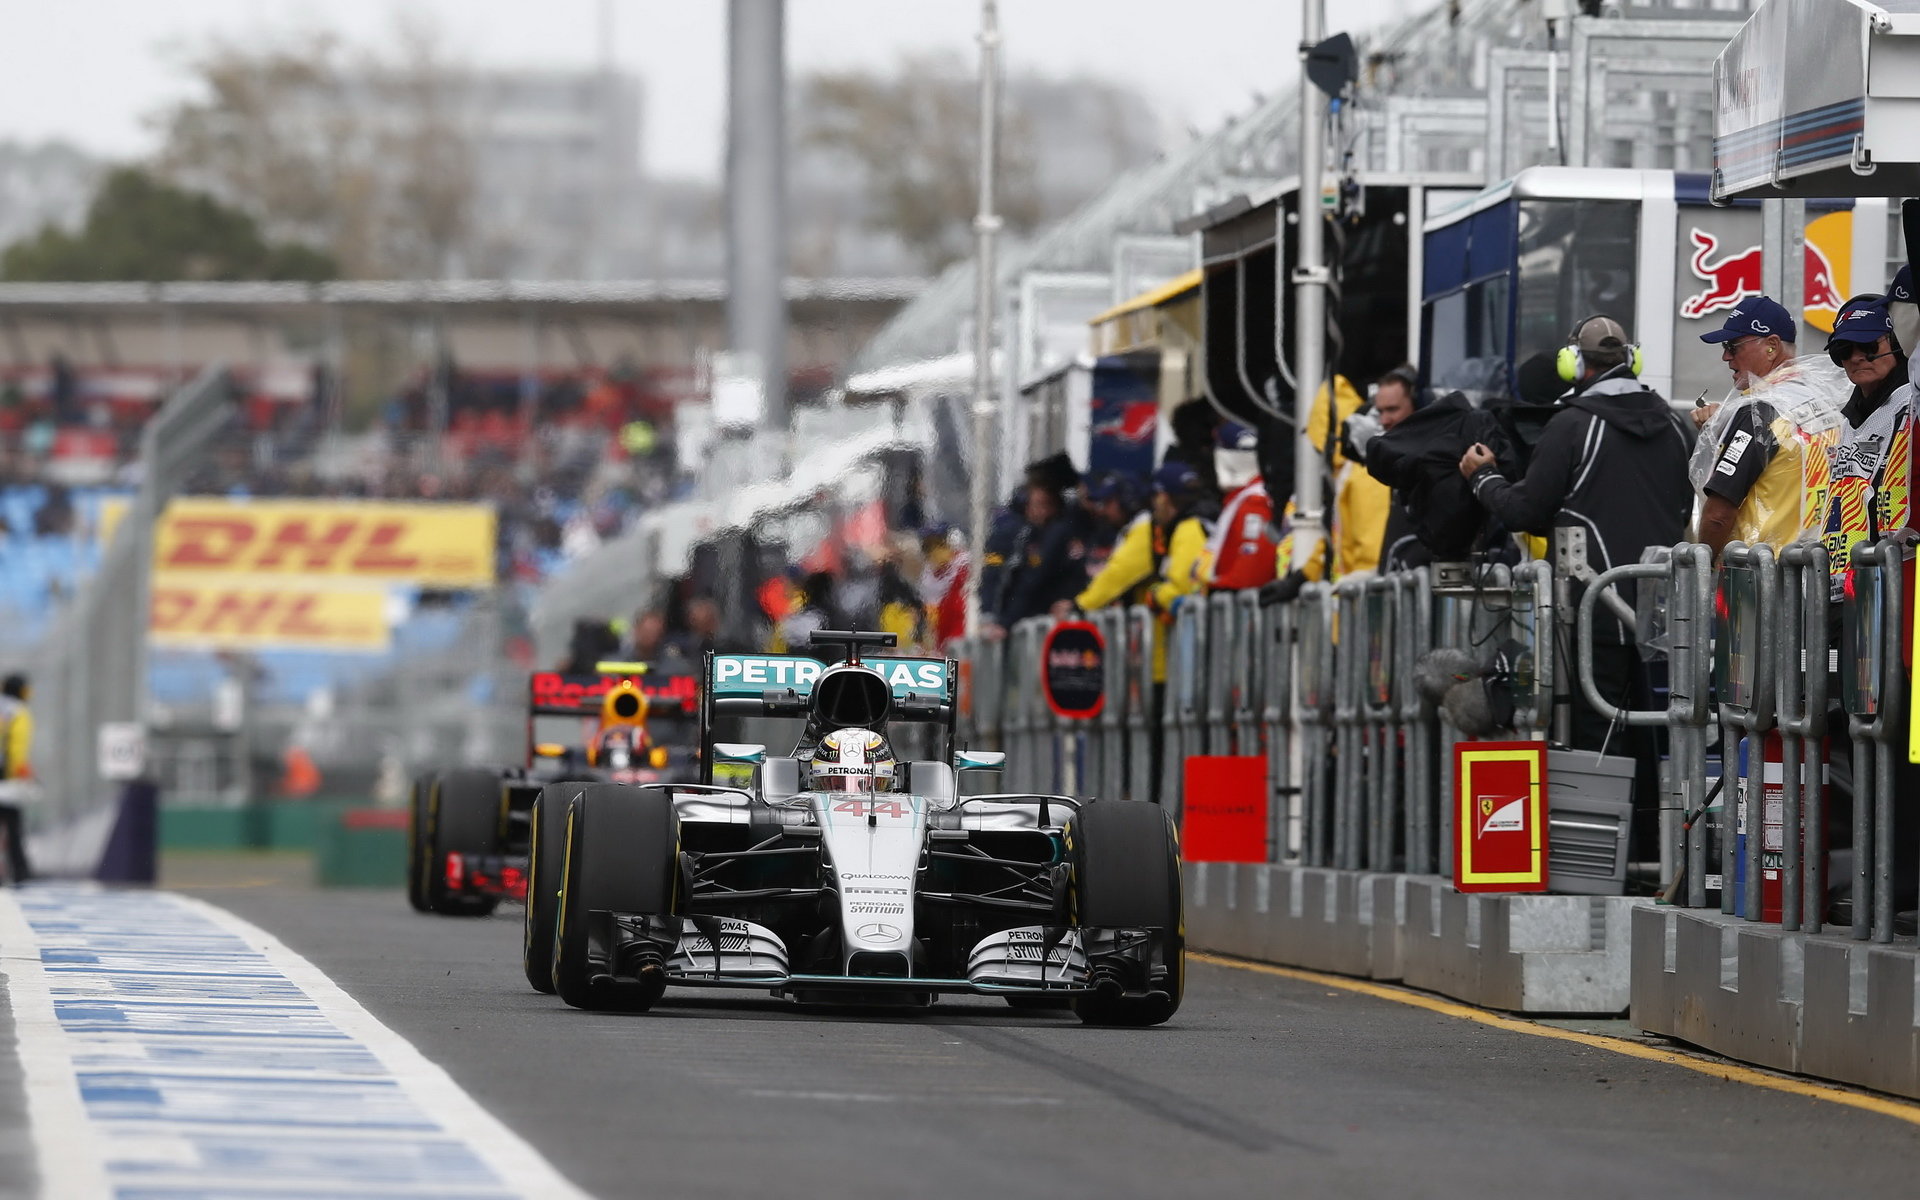 Lewis Hamilton opouští pitlane při pátečním tréninku v Melbourne